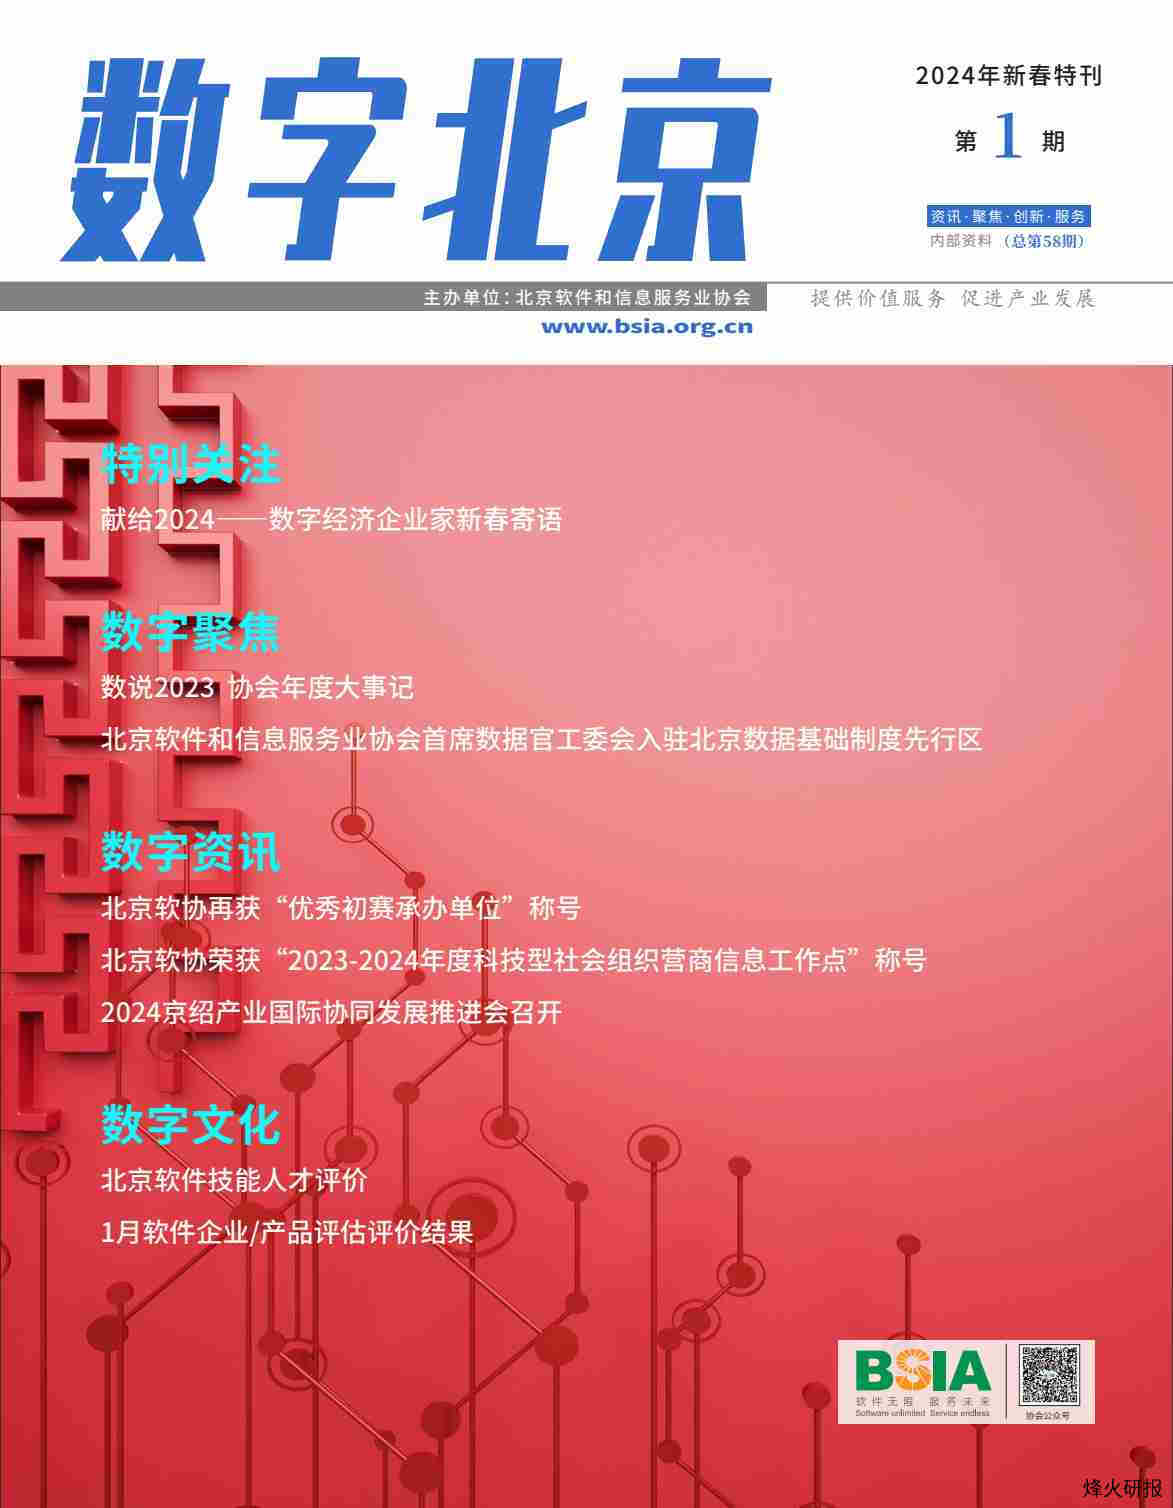 【北京软件和信息服务业协会】《数字北京》电子刊2024年新春特刊第1期.pdf-第一页